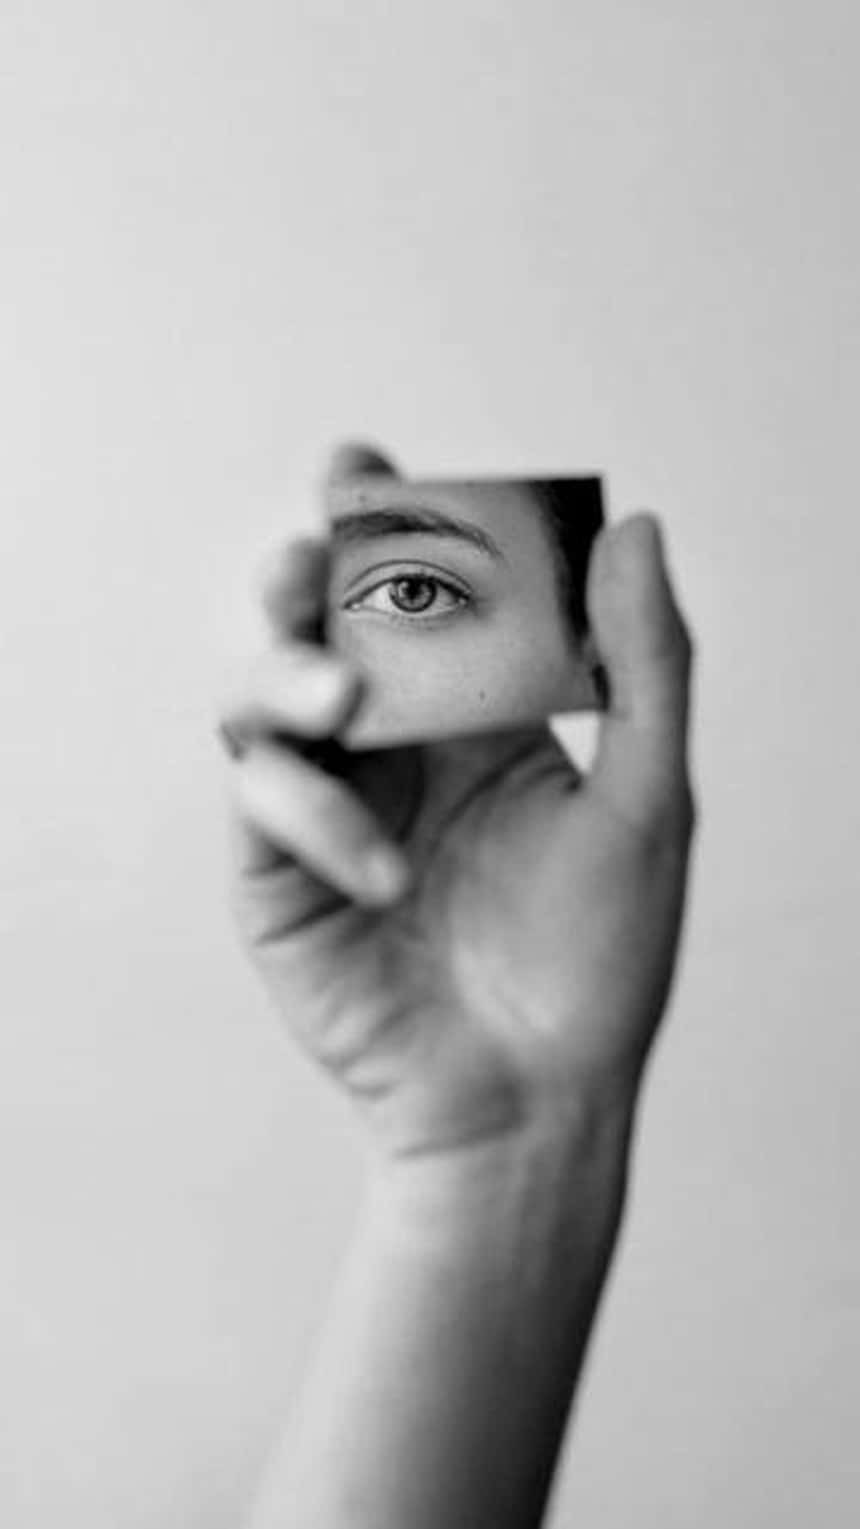 una imagen para Reels de Instagram de una mano que sostiene un espejo en blanco y negro.